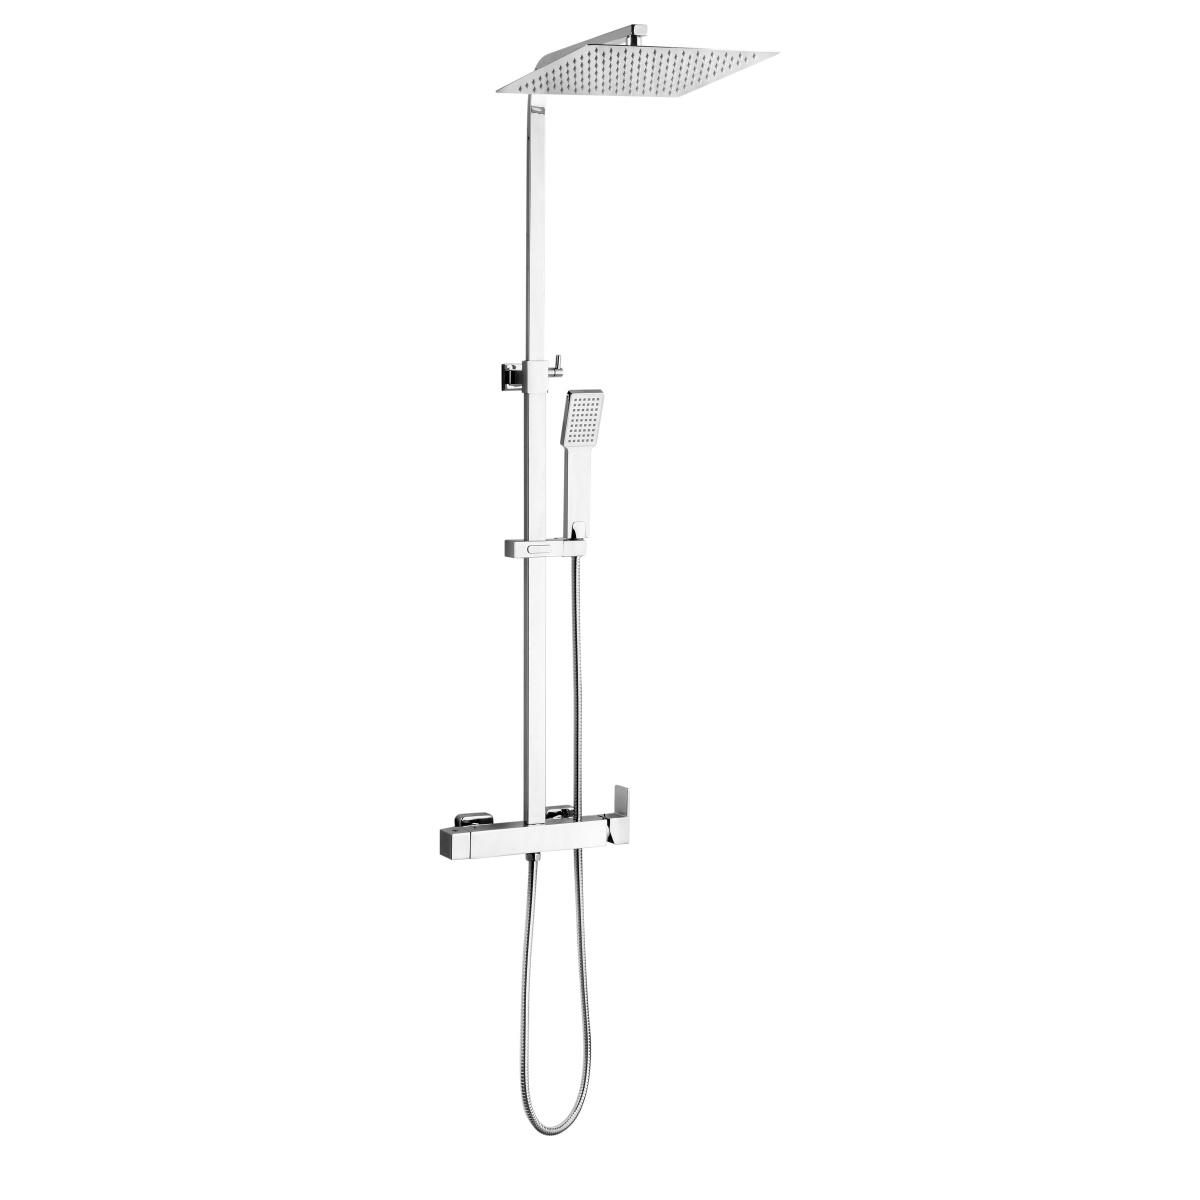 YS34185 Kare duş kolonu, duş bataryalı yağmur duş kolonu, yüksekliği ayarlanabilir;